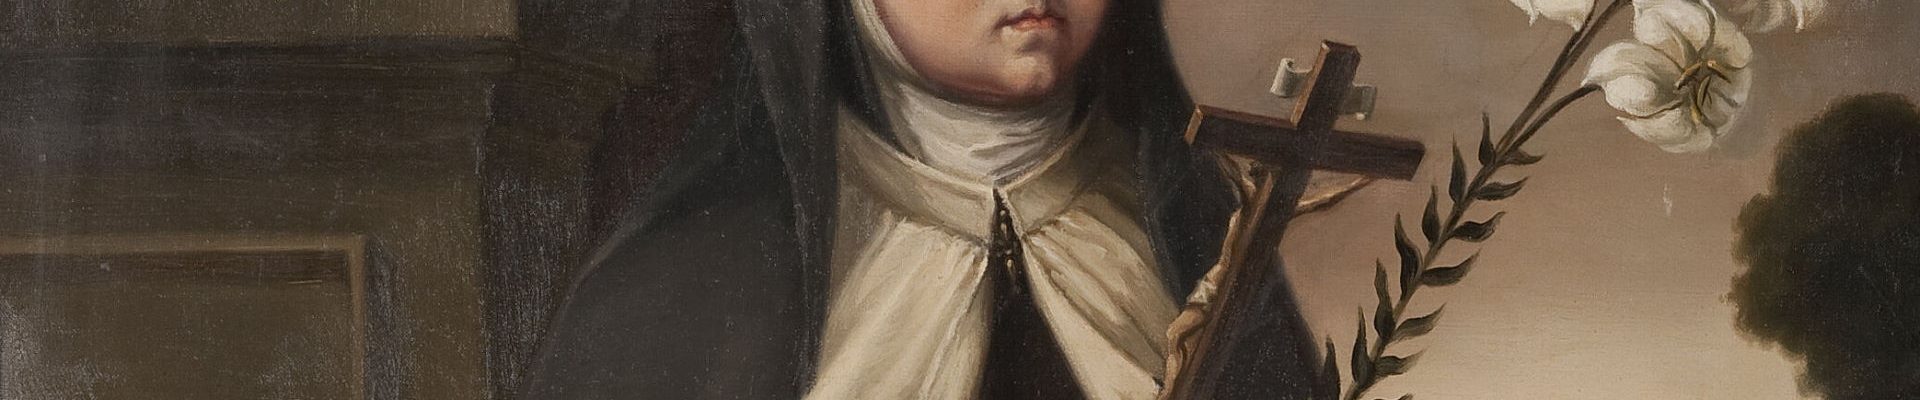 Królewna Maria Anna Teresa w habicie karmelitanki na obrazie powstałym w 1651 roku. W rzeczywistości dziewczynka nigdy nie osiągnęła takiego wieku i nie trafiła do zakonu